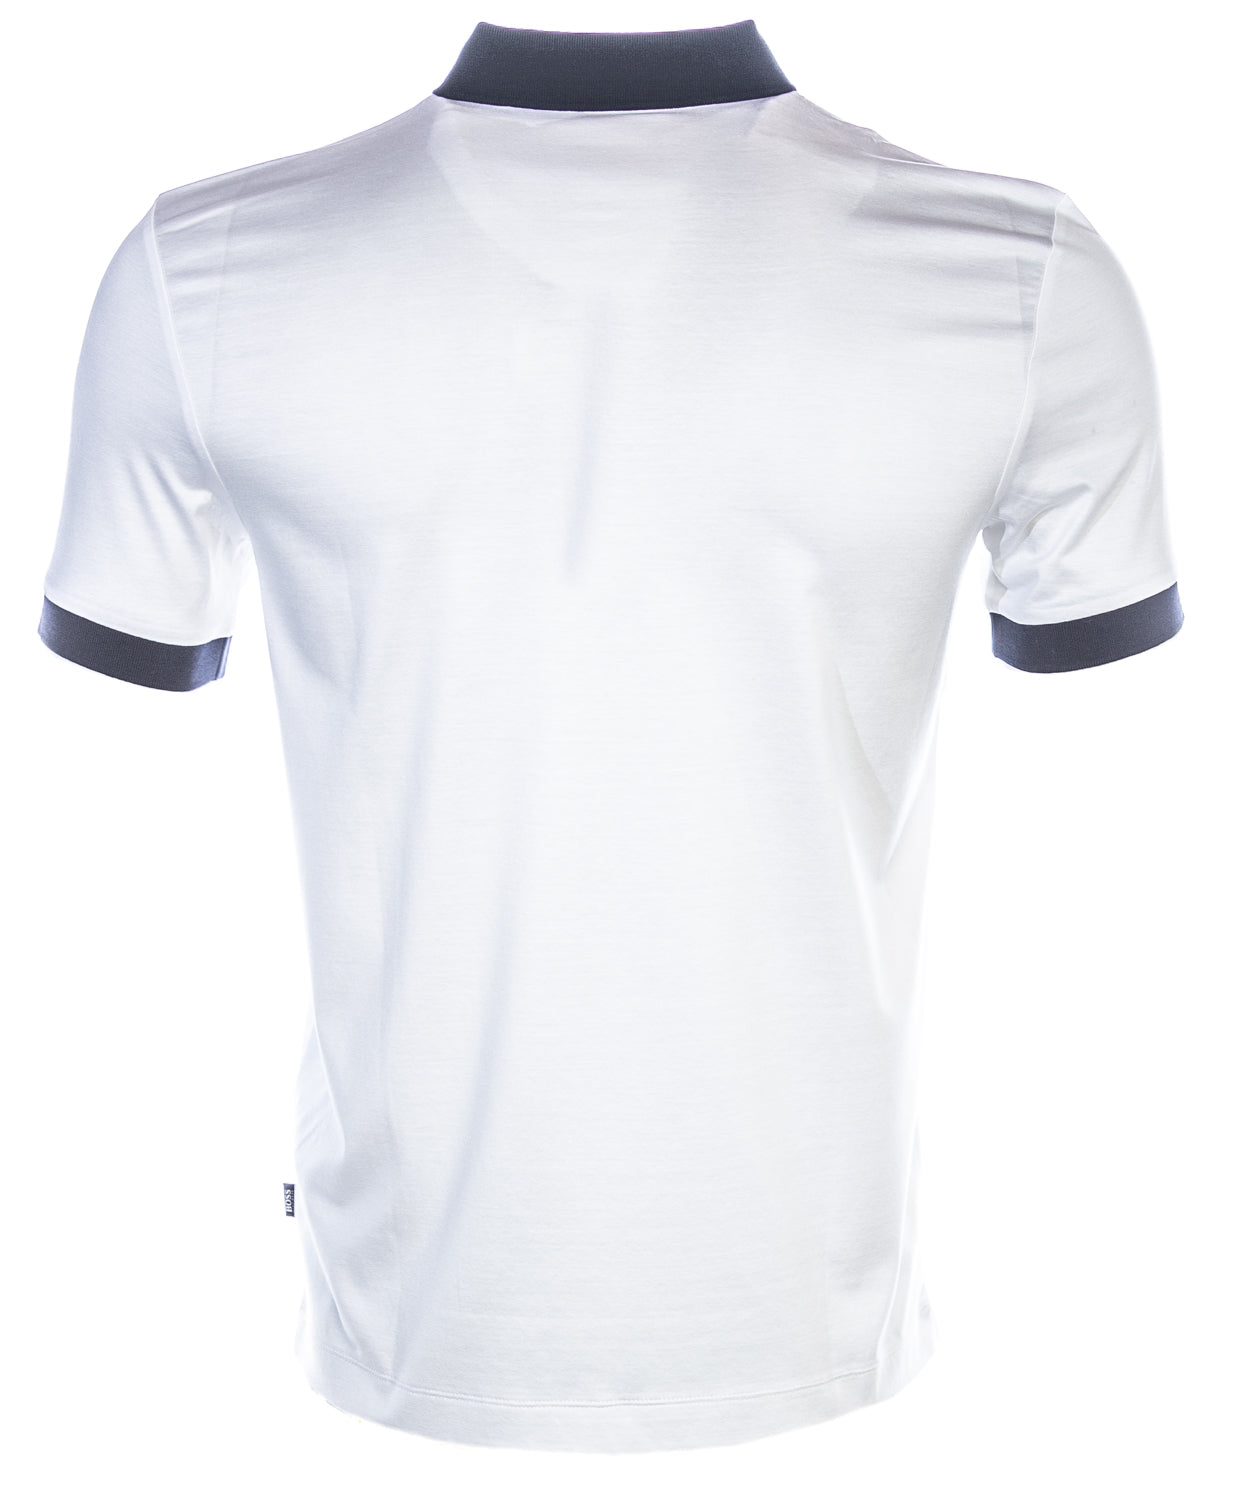 BOSS Penrose 22 Polo Shirt in White